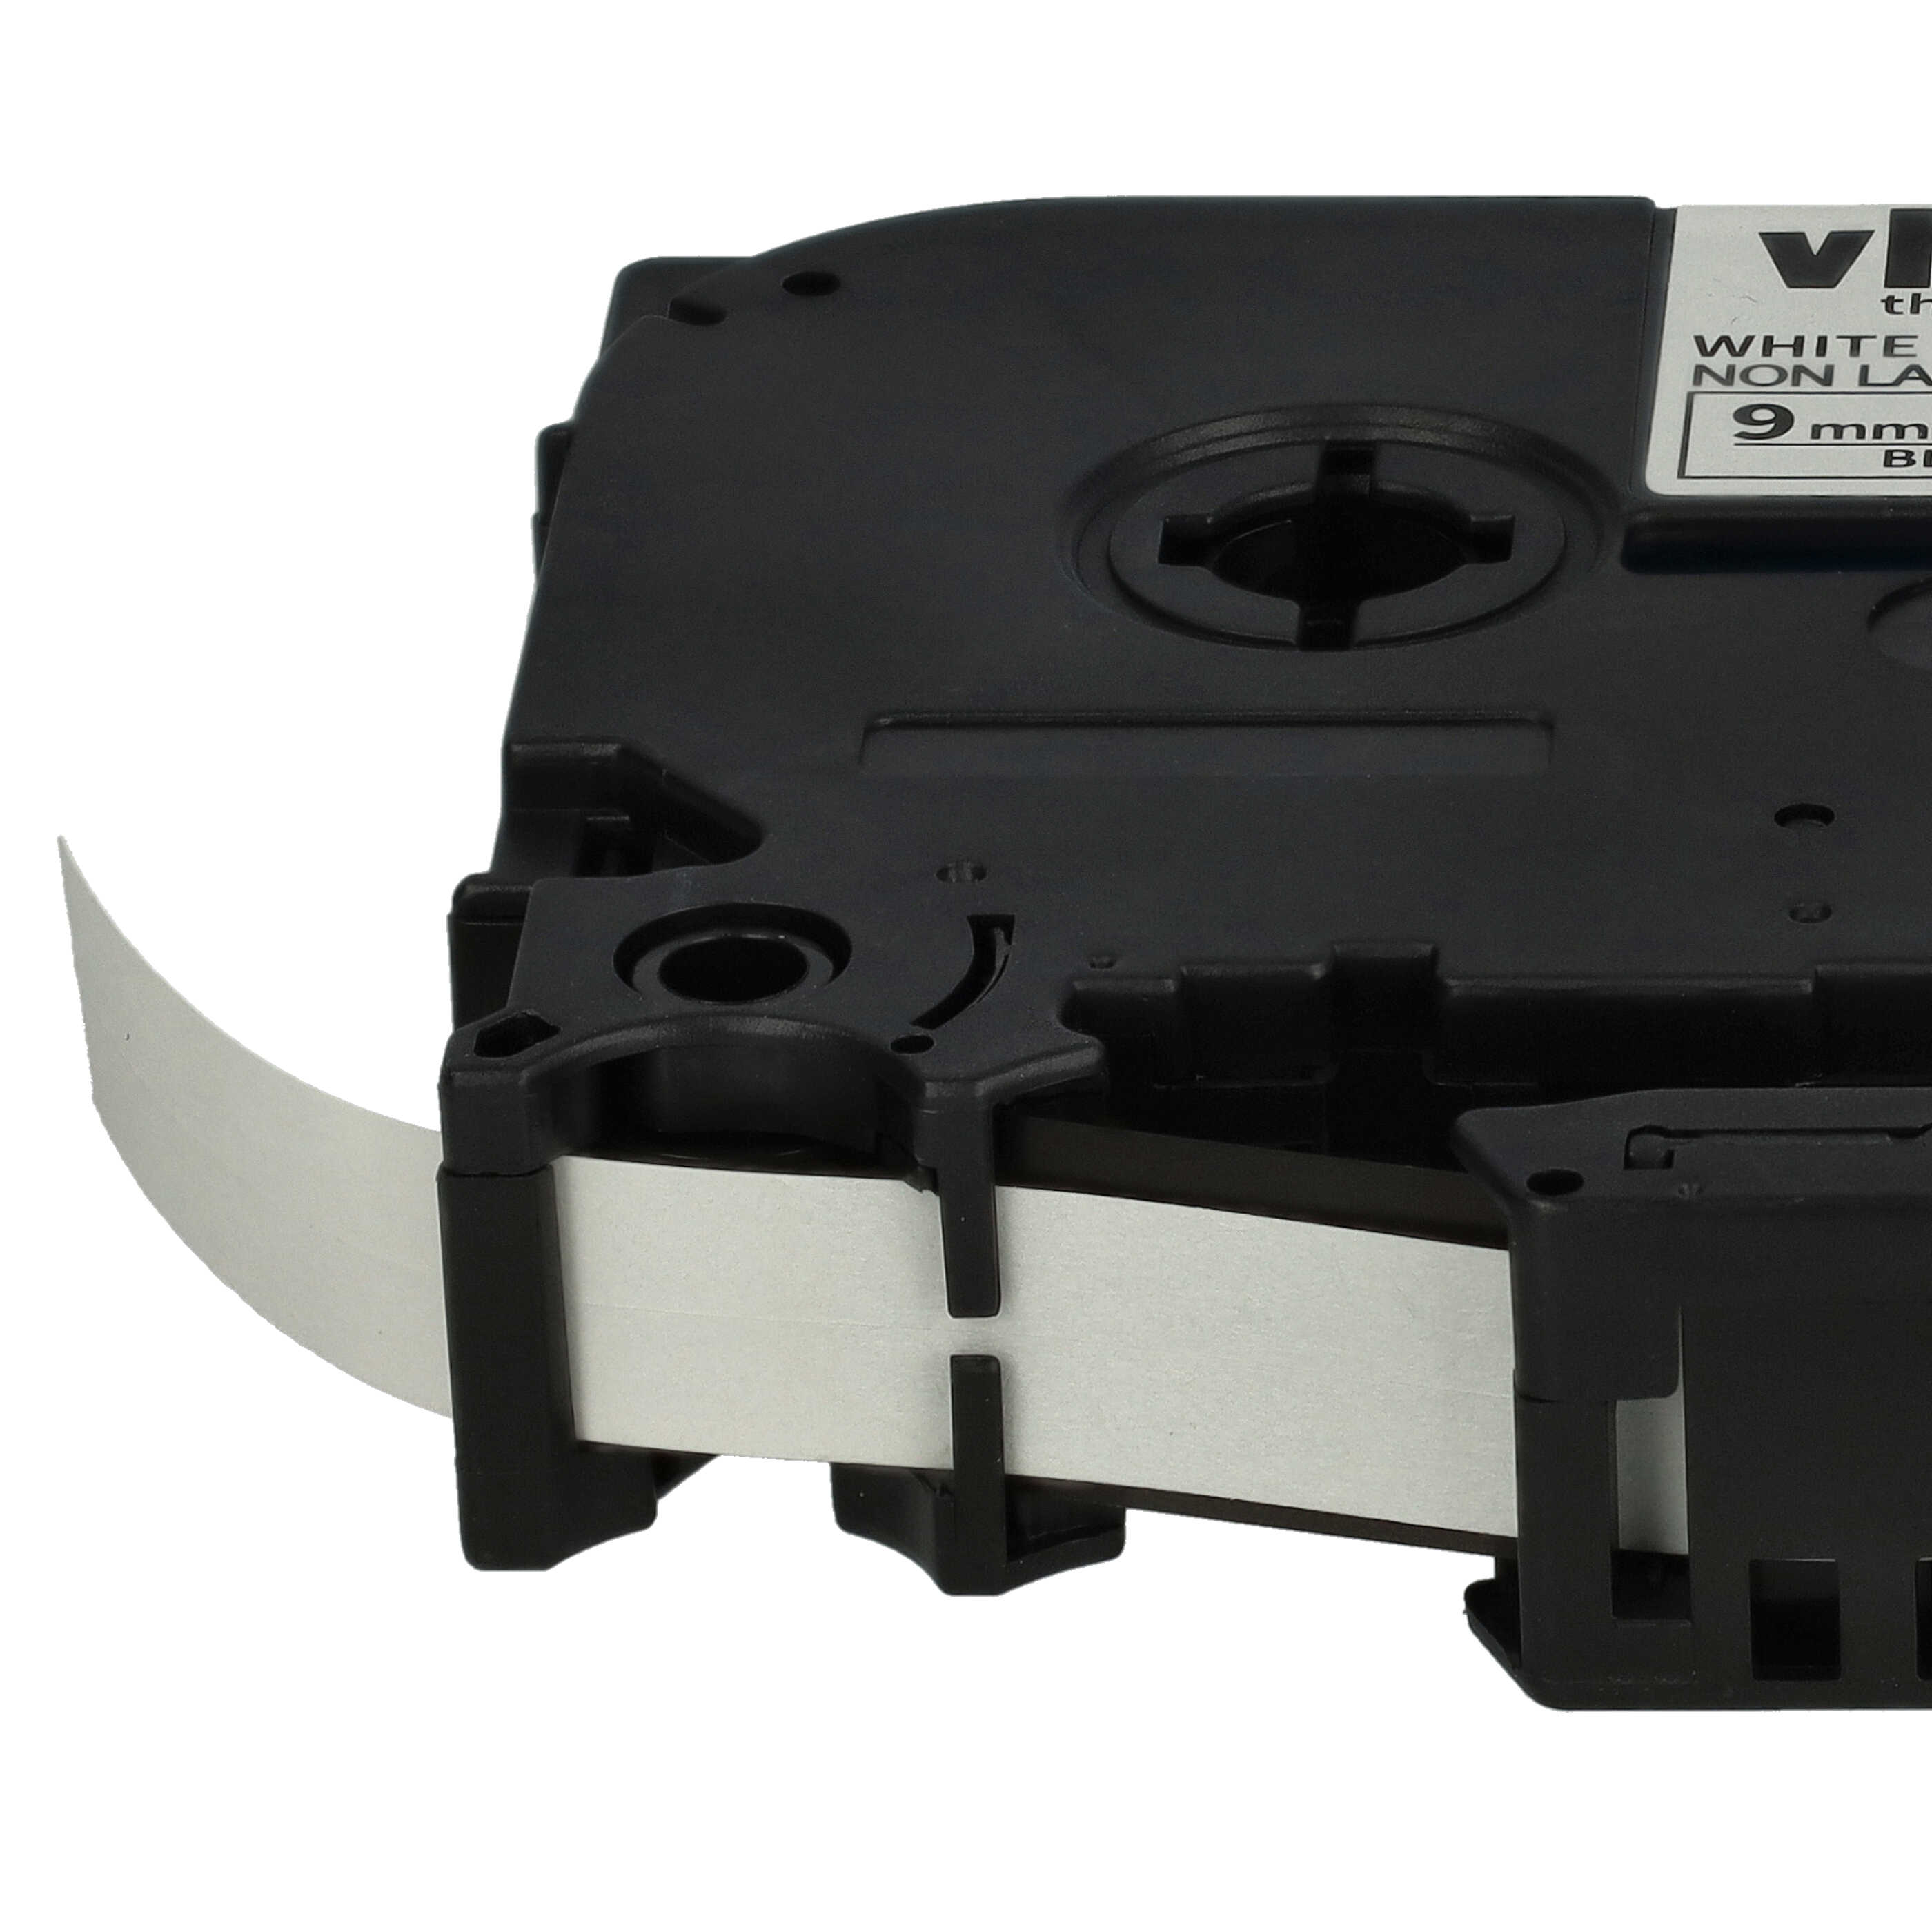 Cassette à ruban remplace Brother TZE-N221 - 9mm lettrage Noir ruban Blanc, plastique